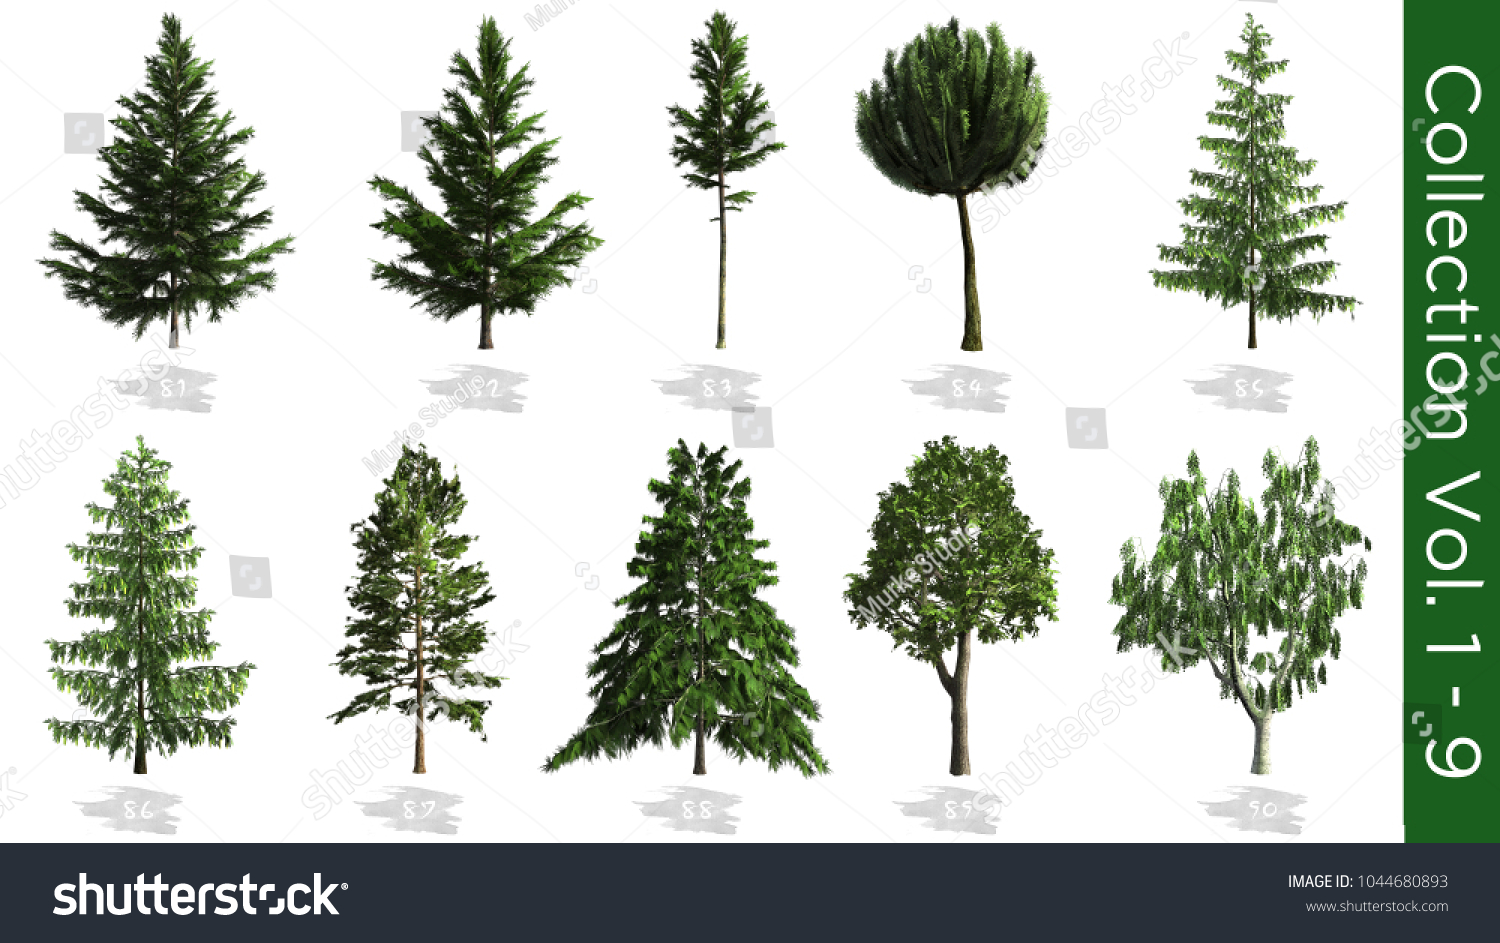 Trees 3drender On White Background Trees Stock Illustration 1044680893 ...